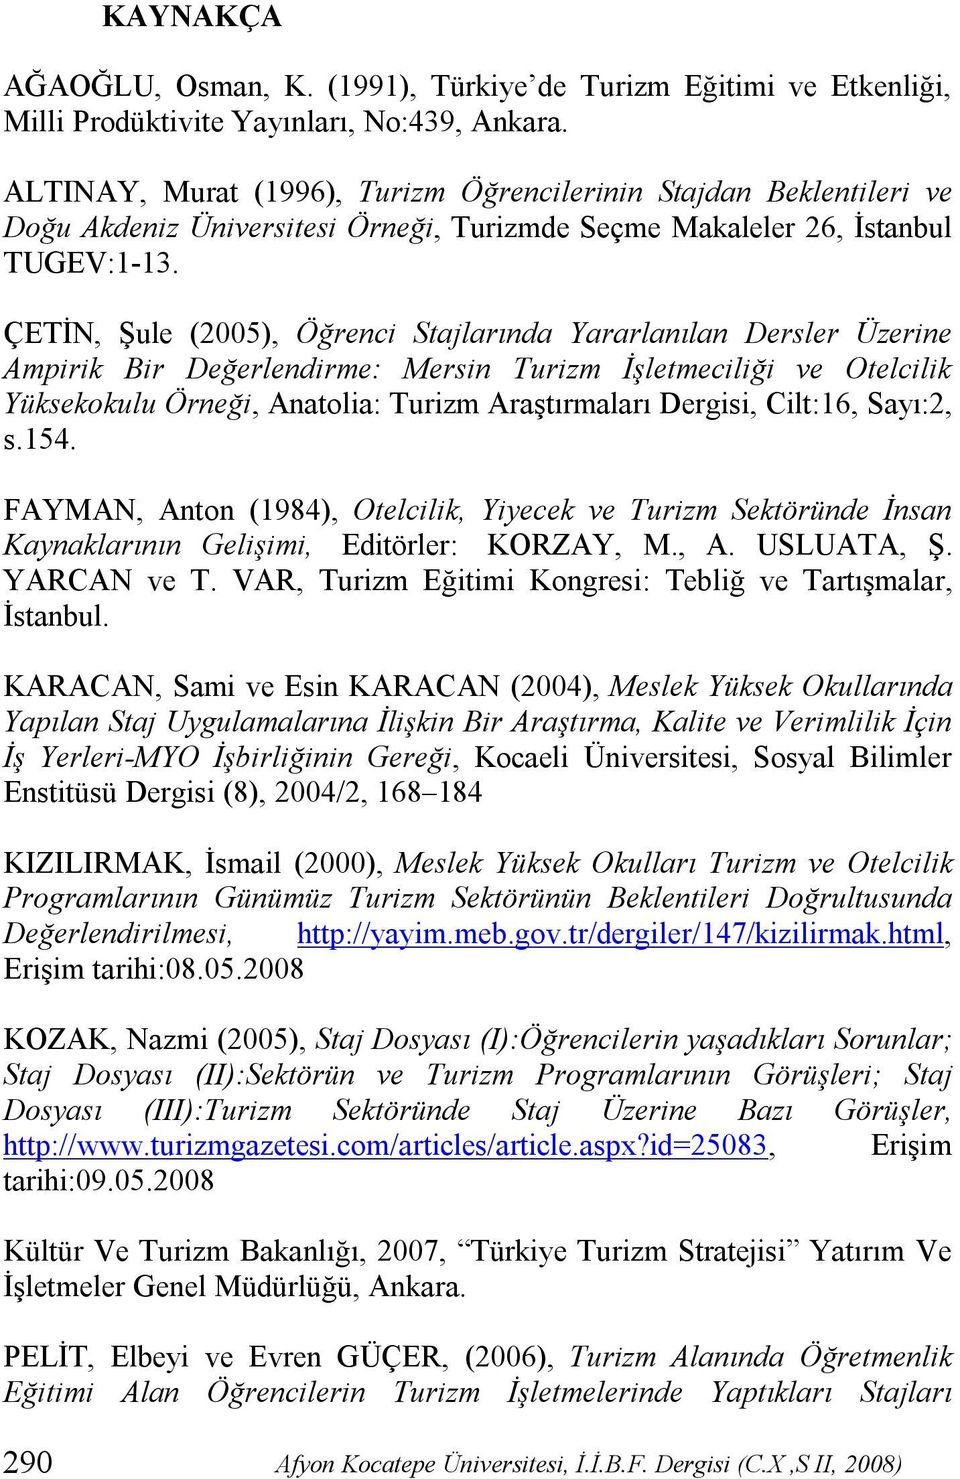 ÇETİN, Şule (2005), Öğrenci Stajlarında Yararlanılan Dersler Üzerine Ampirik Bir Değerlendirme: Mersin Turizm İşletmeciliği ve Otelcilik Yüksekokulu Örneği, Anatolia: Turizm Araştırmaları Dergisi,